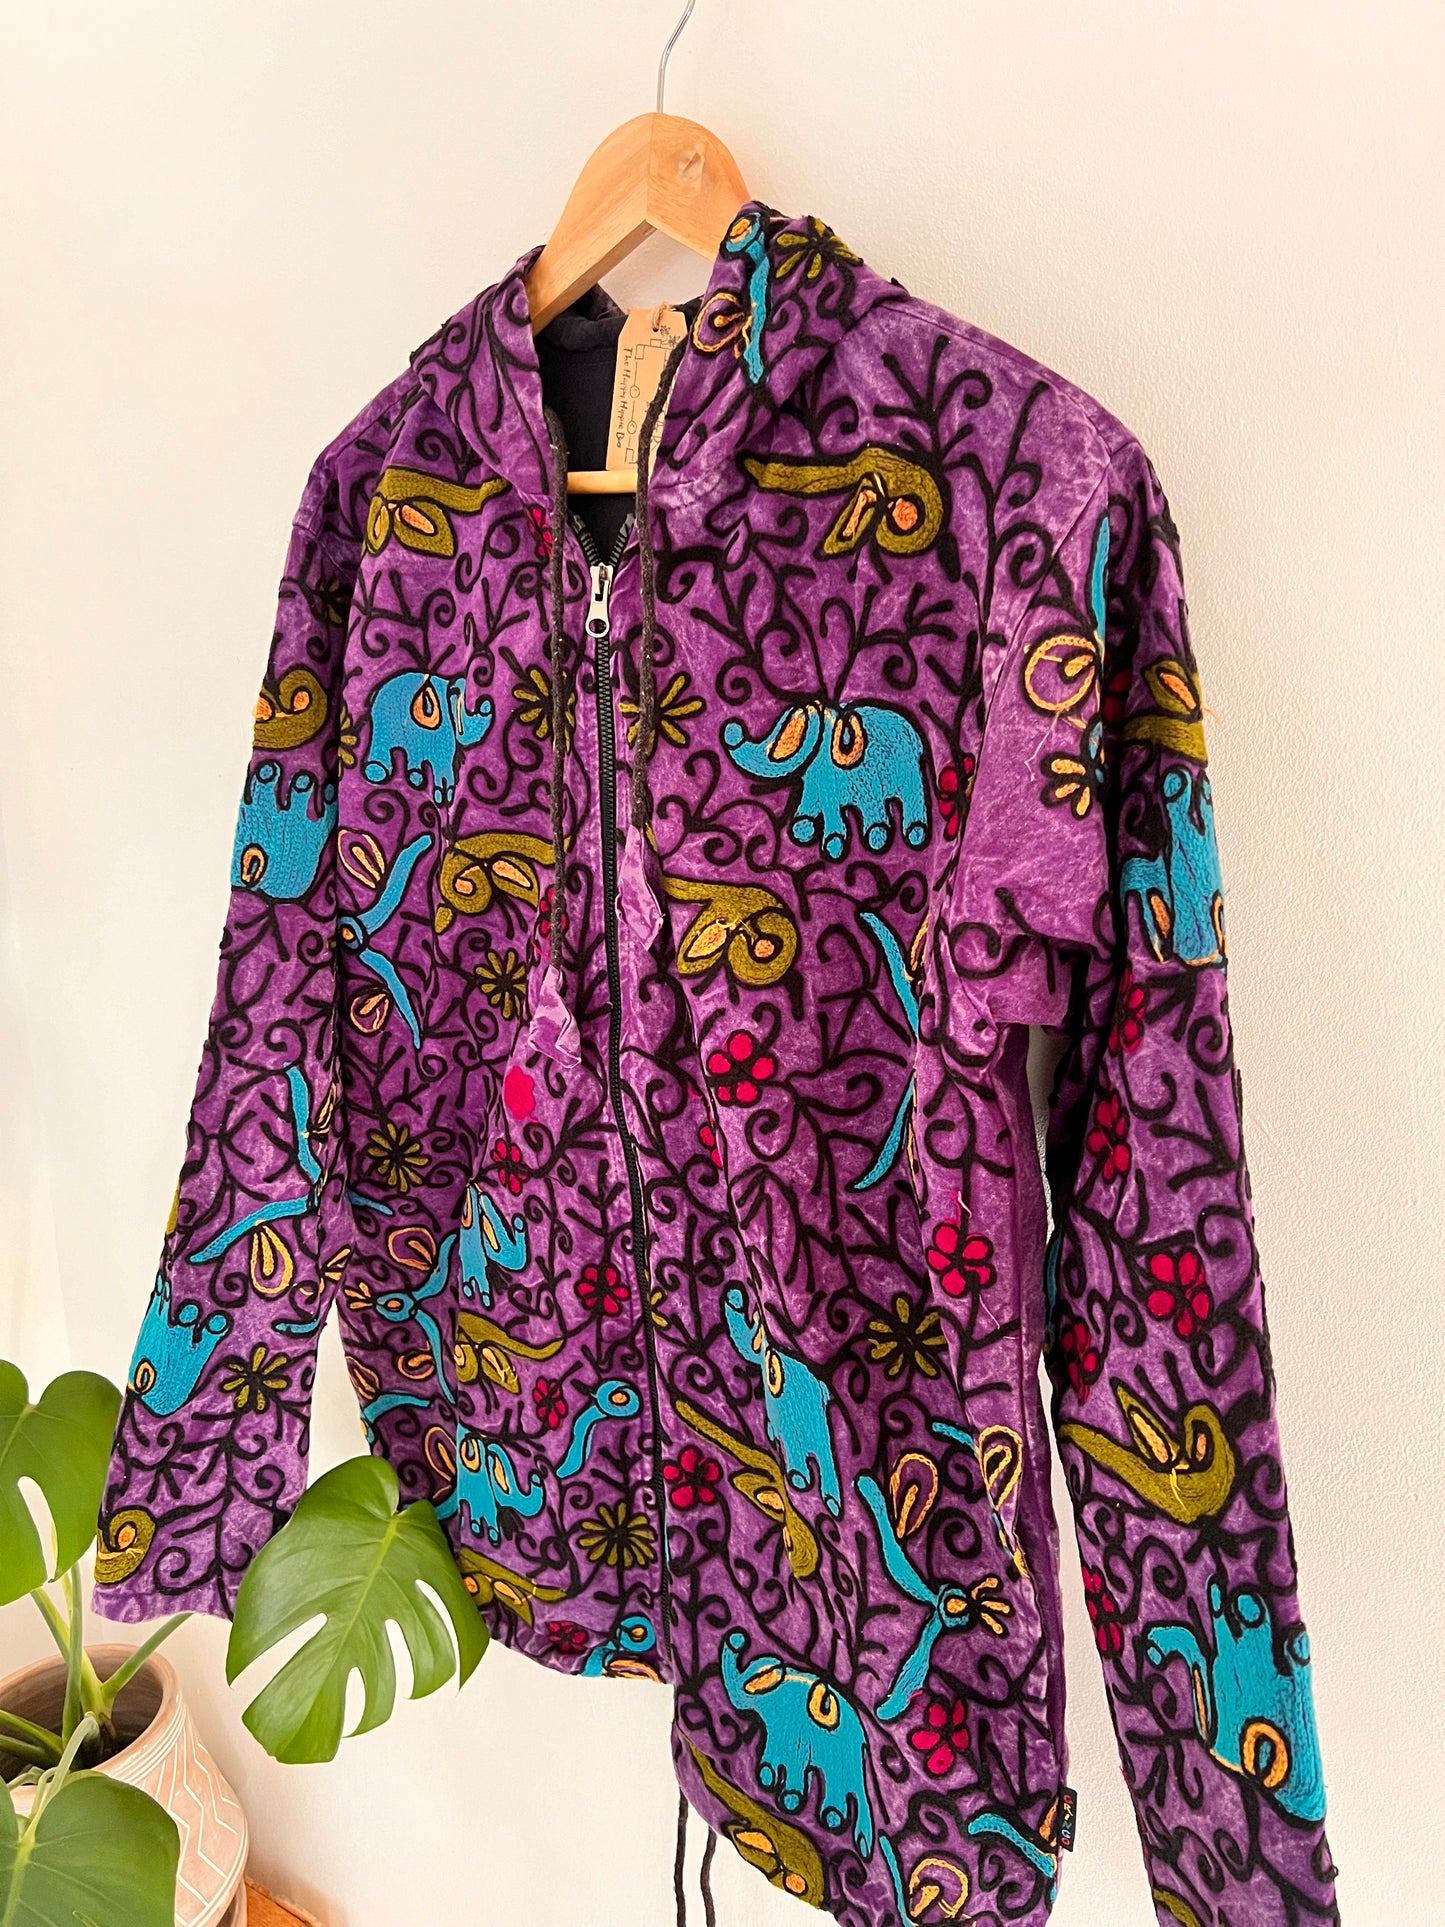 Handmade Fair Trade Purple Embroidered Elephant Print Hooded Jumper 